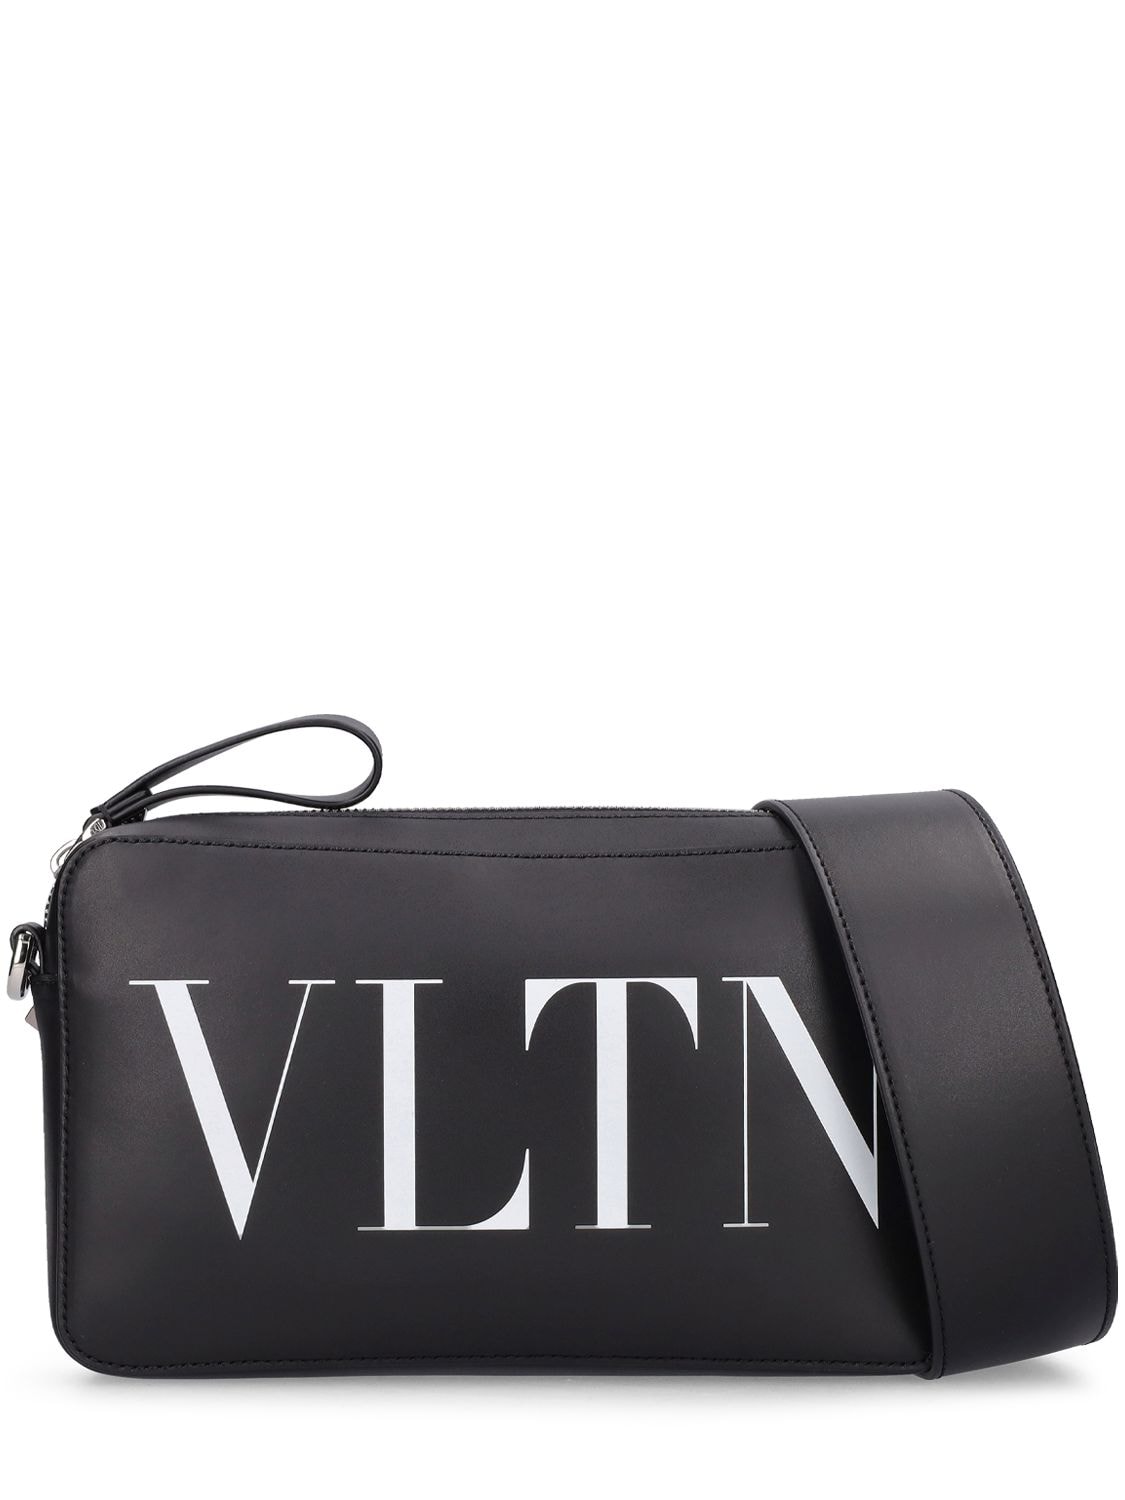 Valentino Garavani Medium Black Vltn Cross Body Bag In Black,white